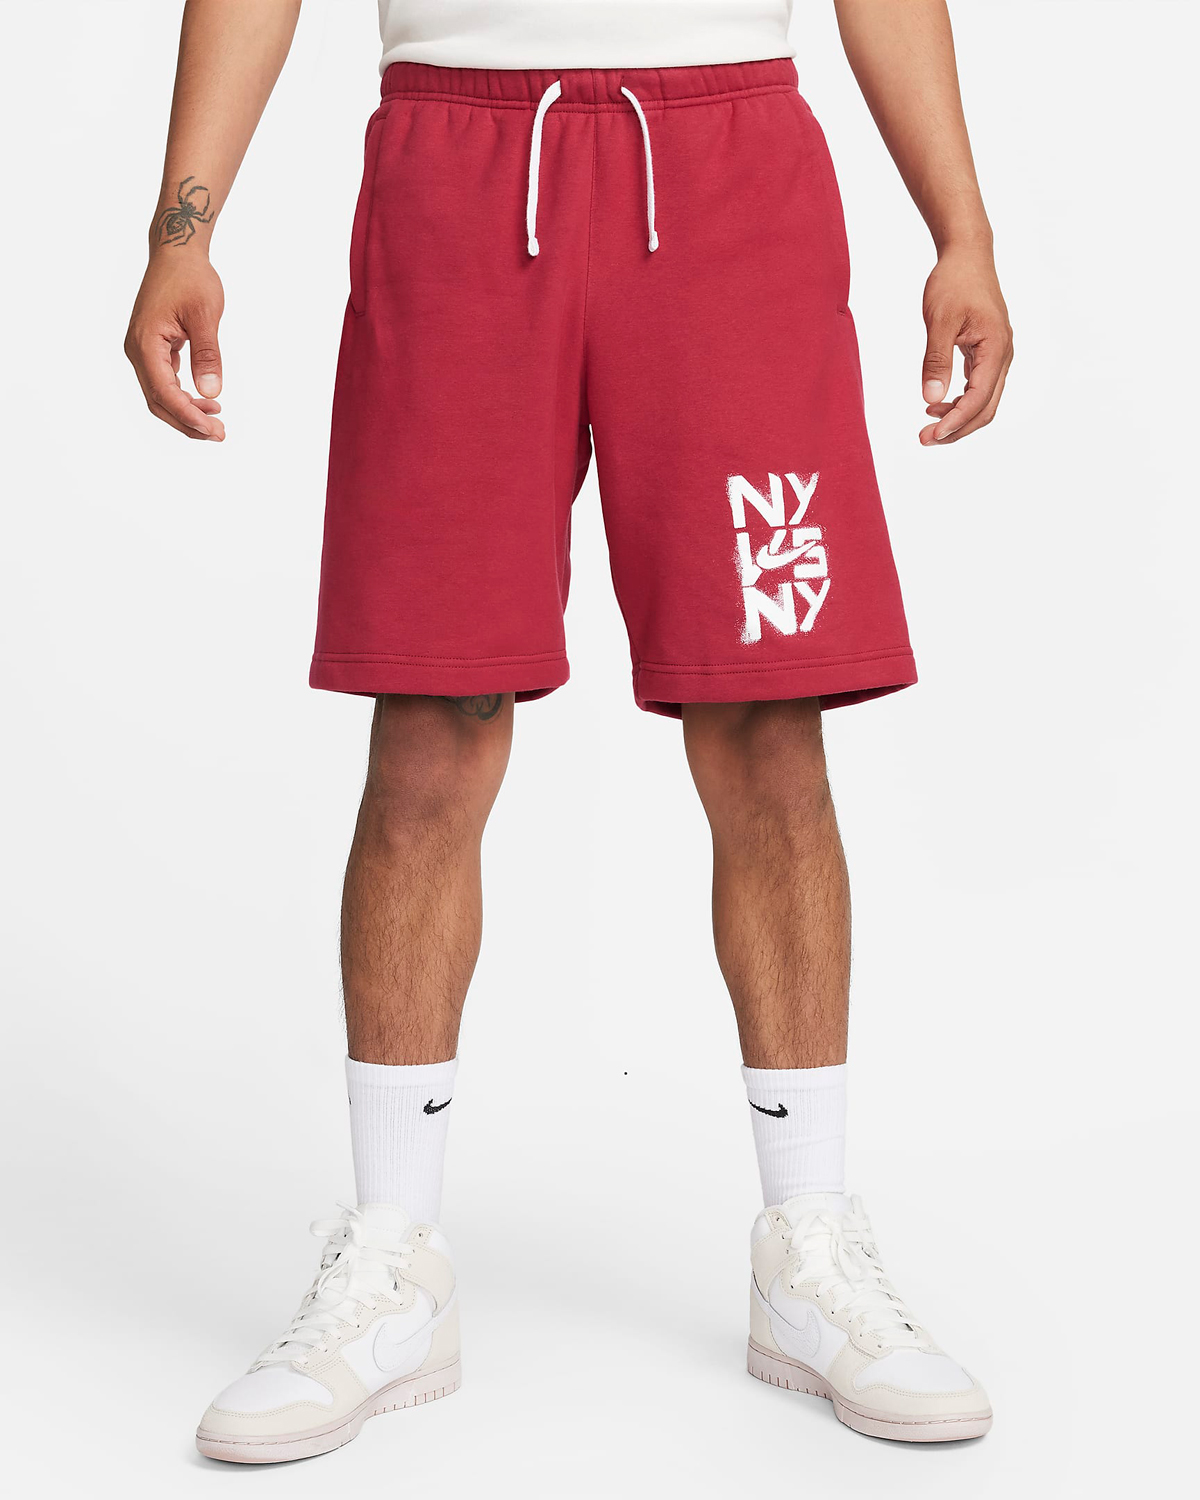 Nike-NY-vs-NY-Shorts-Noble-Red-1